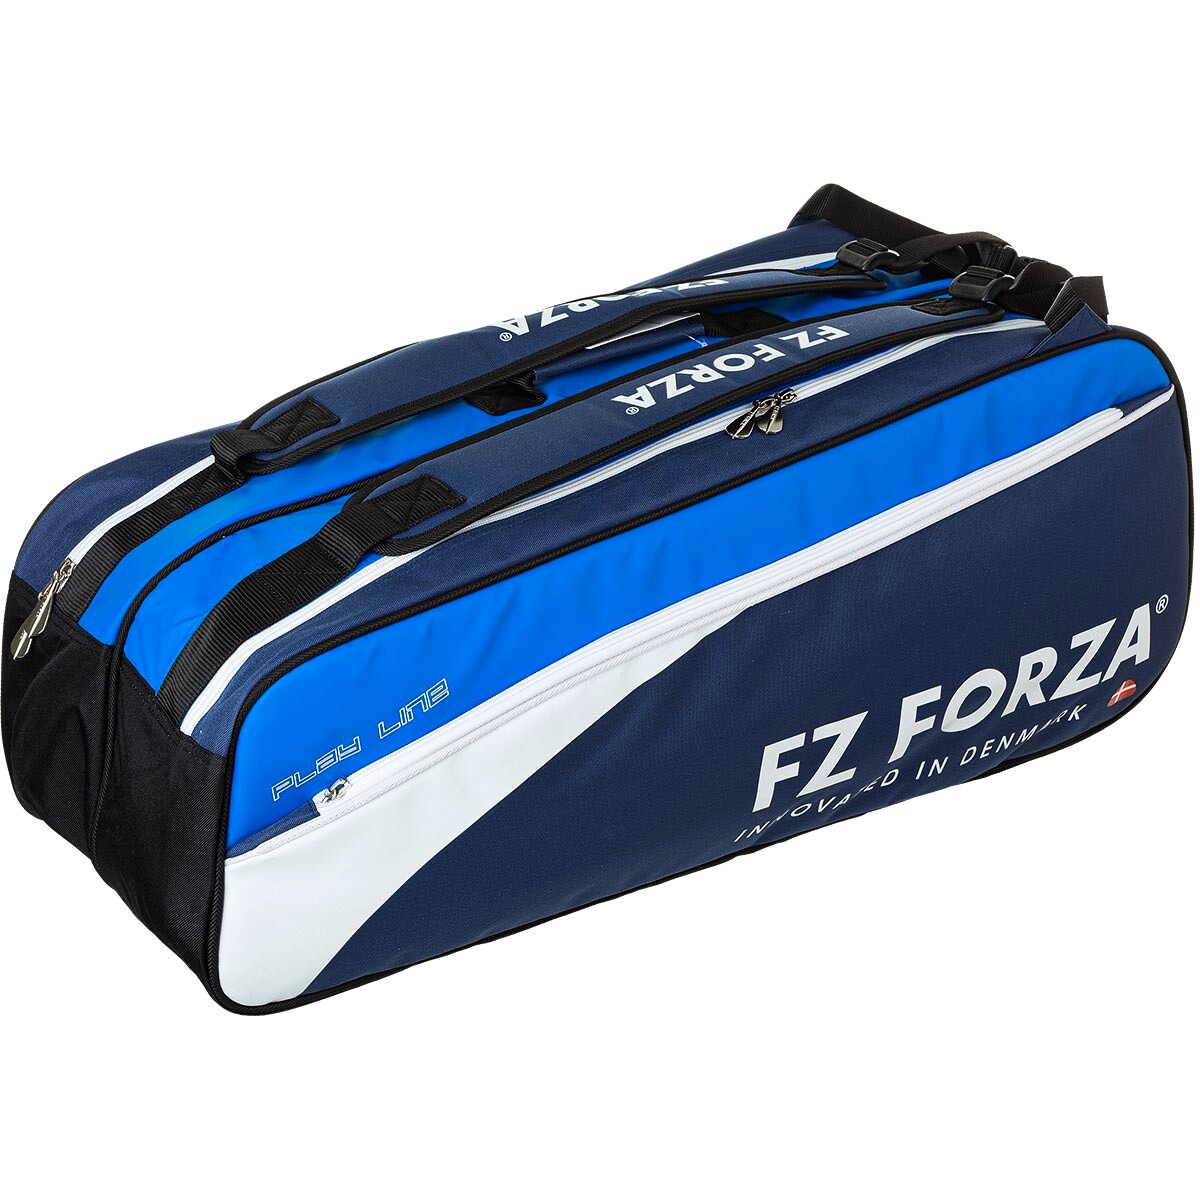 Táska teniszütőhöz FZ Forza  Racket Bag Play Line 9